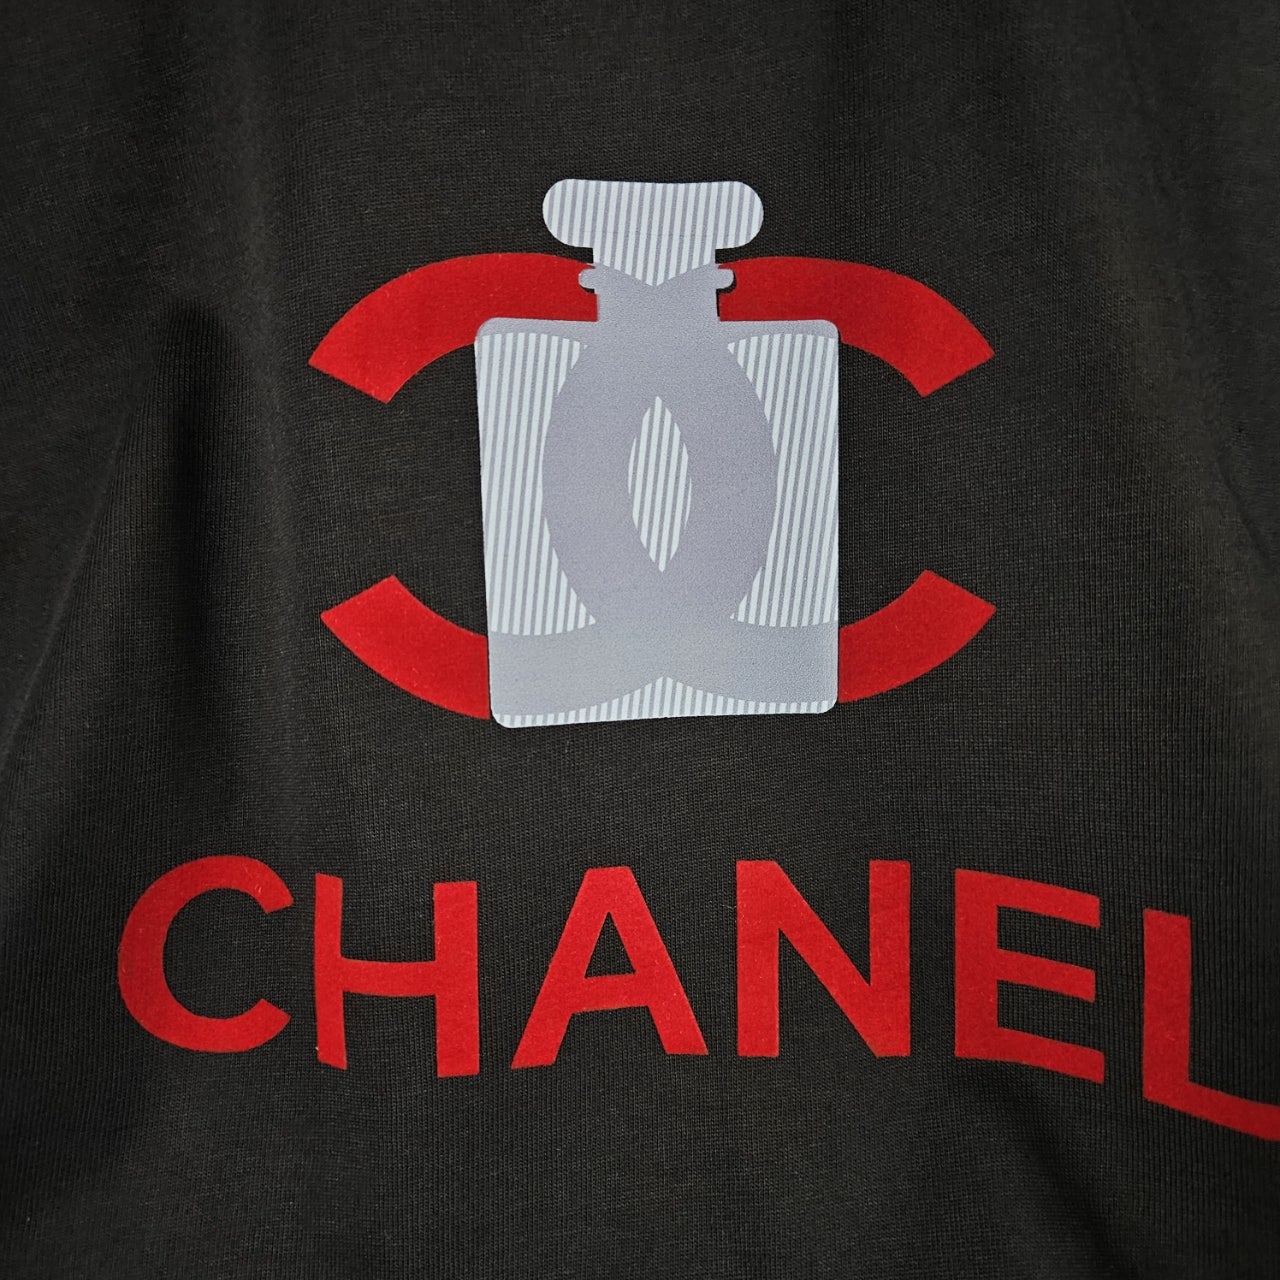 샤넬-no5-티셔츠-1-명품 레플리카 미러 SA급